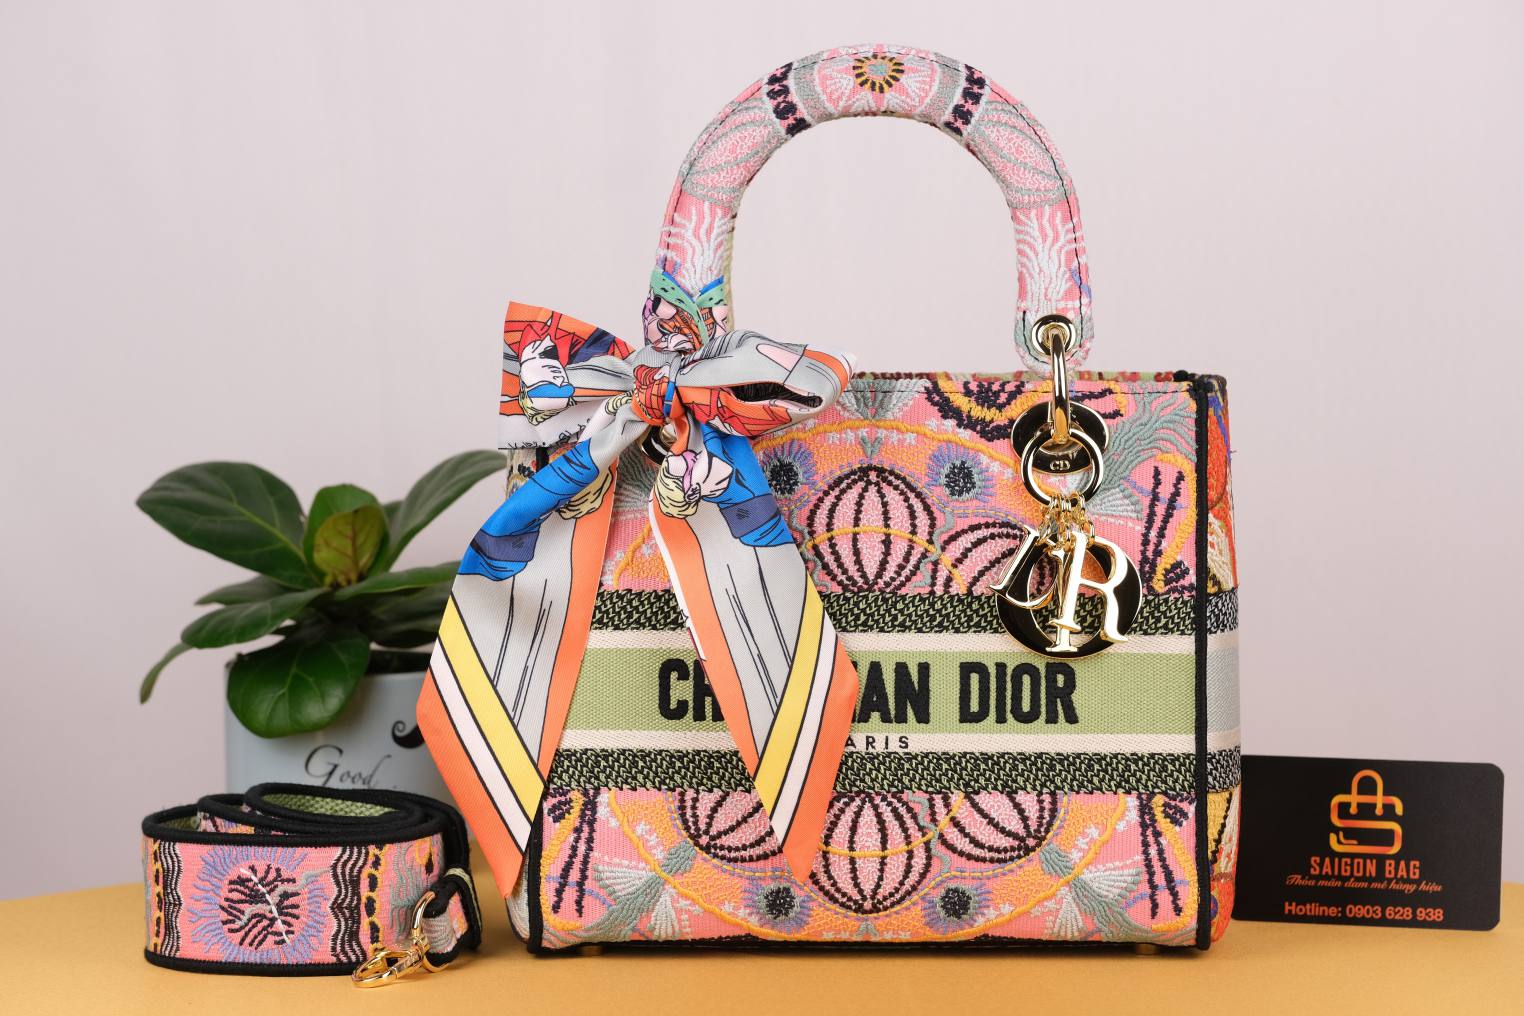 Túi Xách Dior Medium Lady D-Lite Bag - Cam